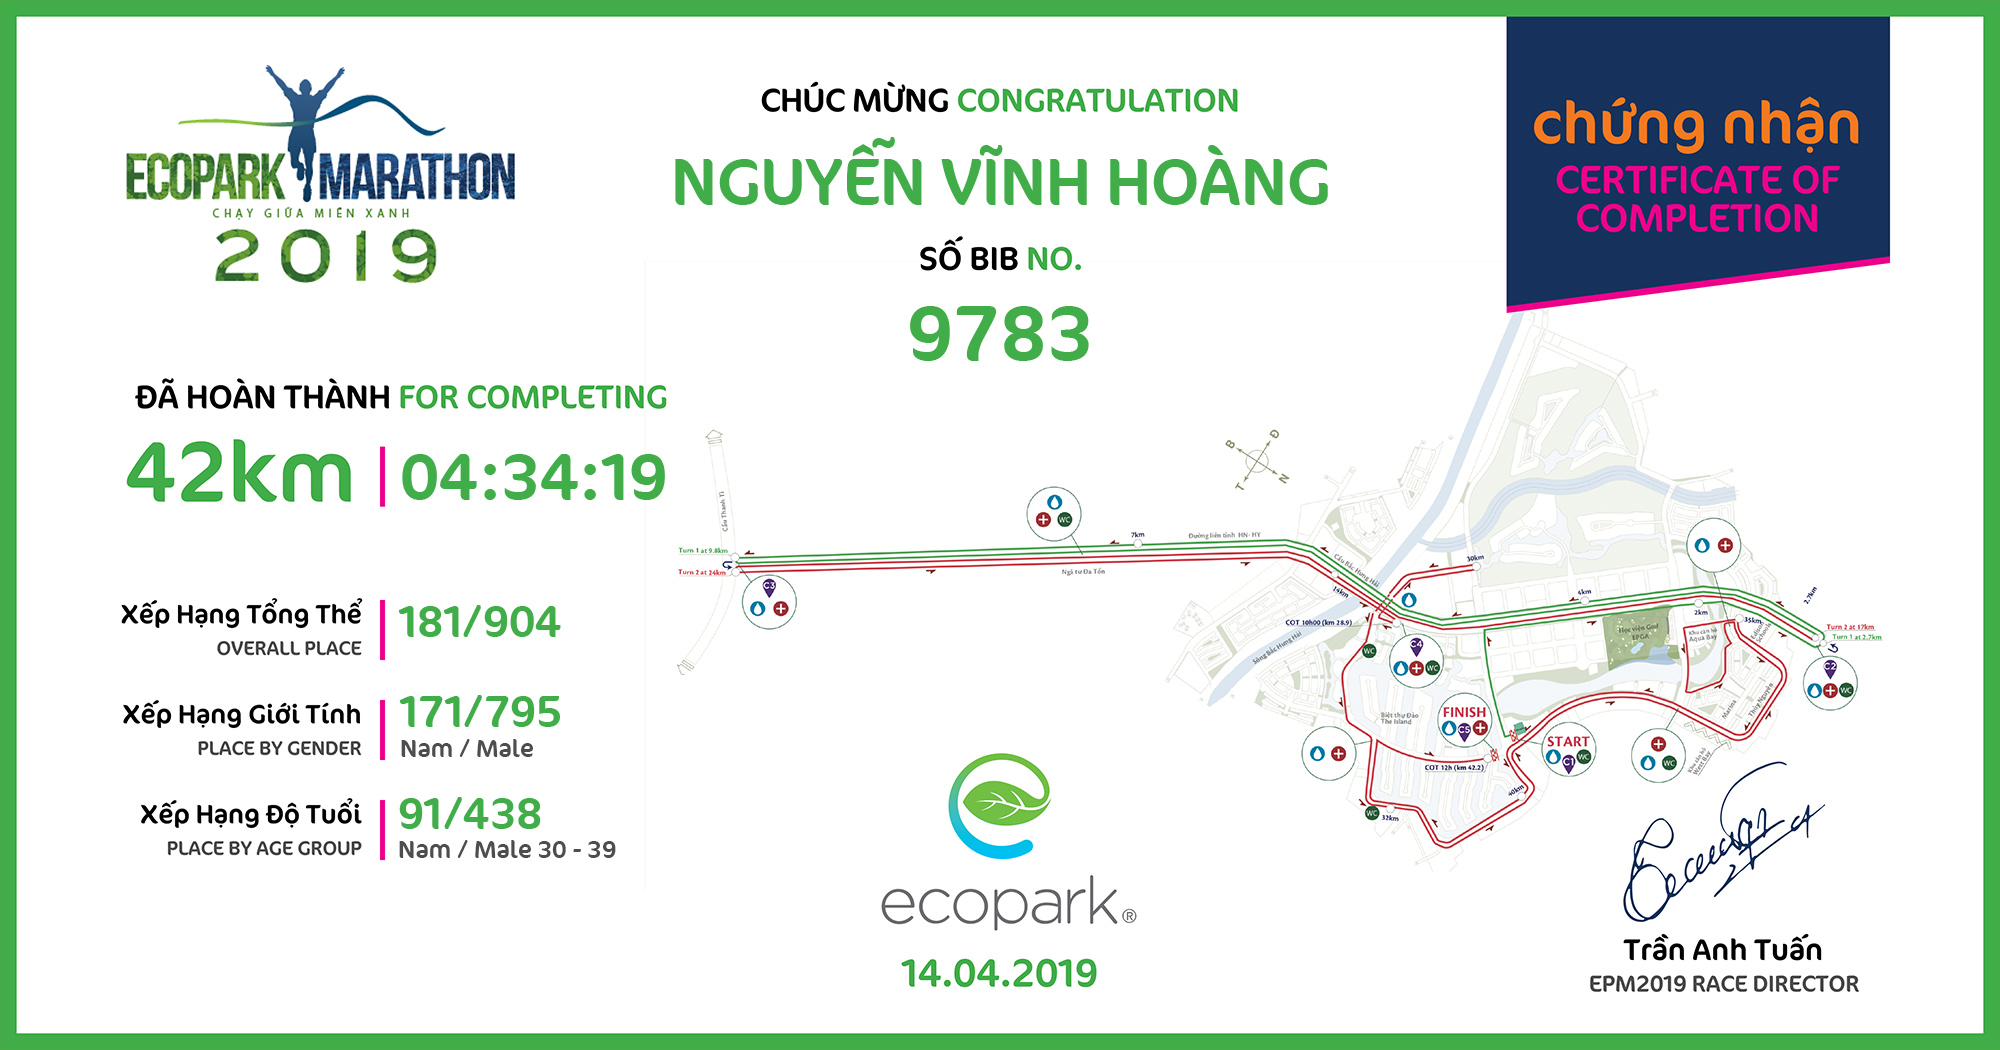 9783 - Nguyễn Vĩnh Hoàng